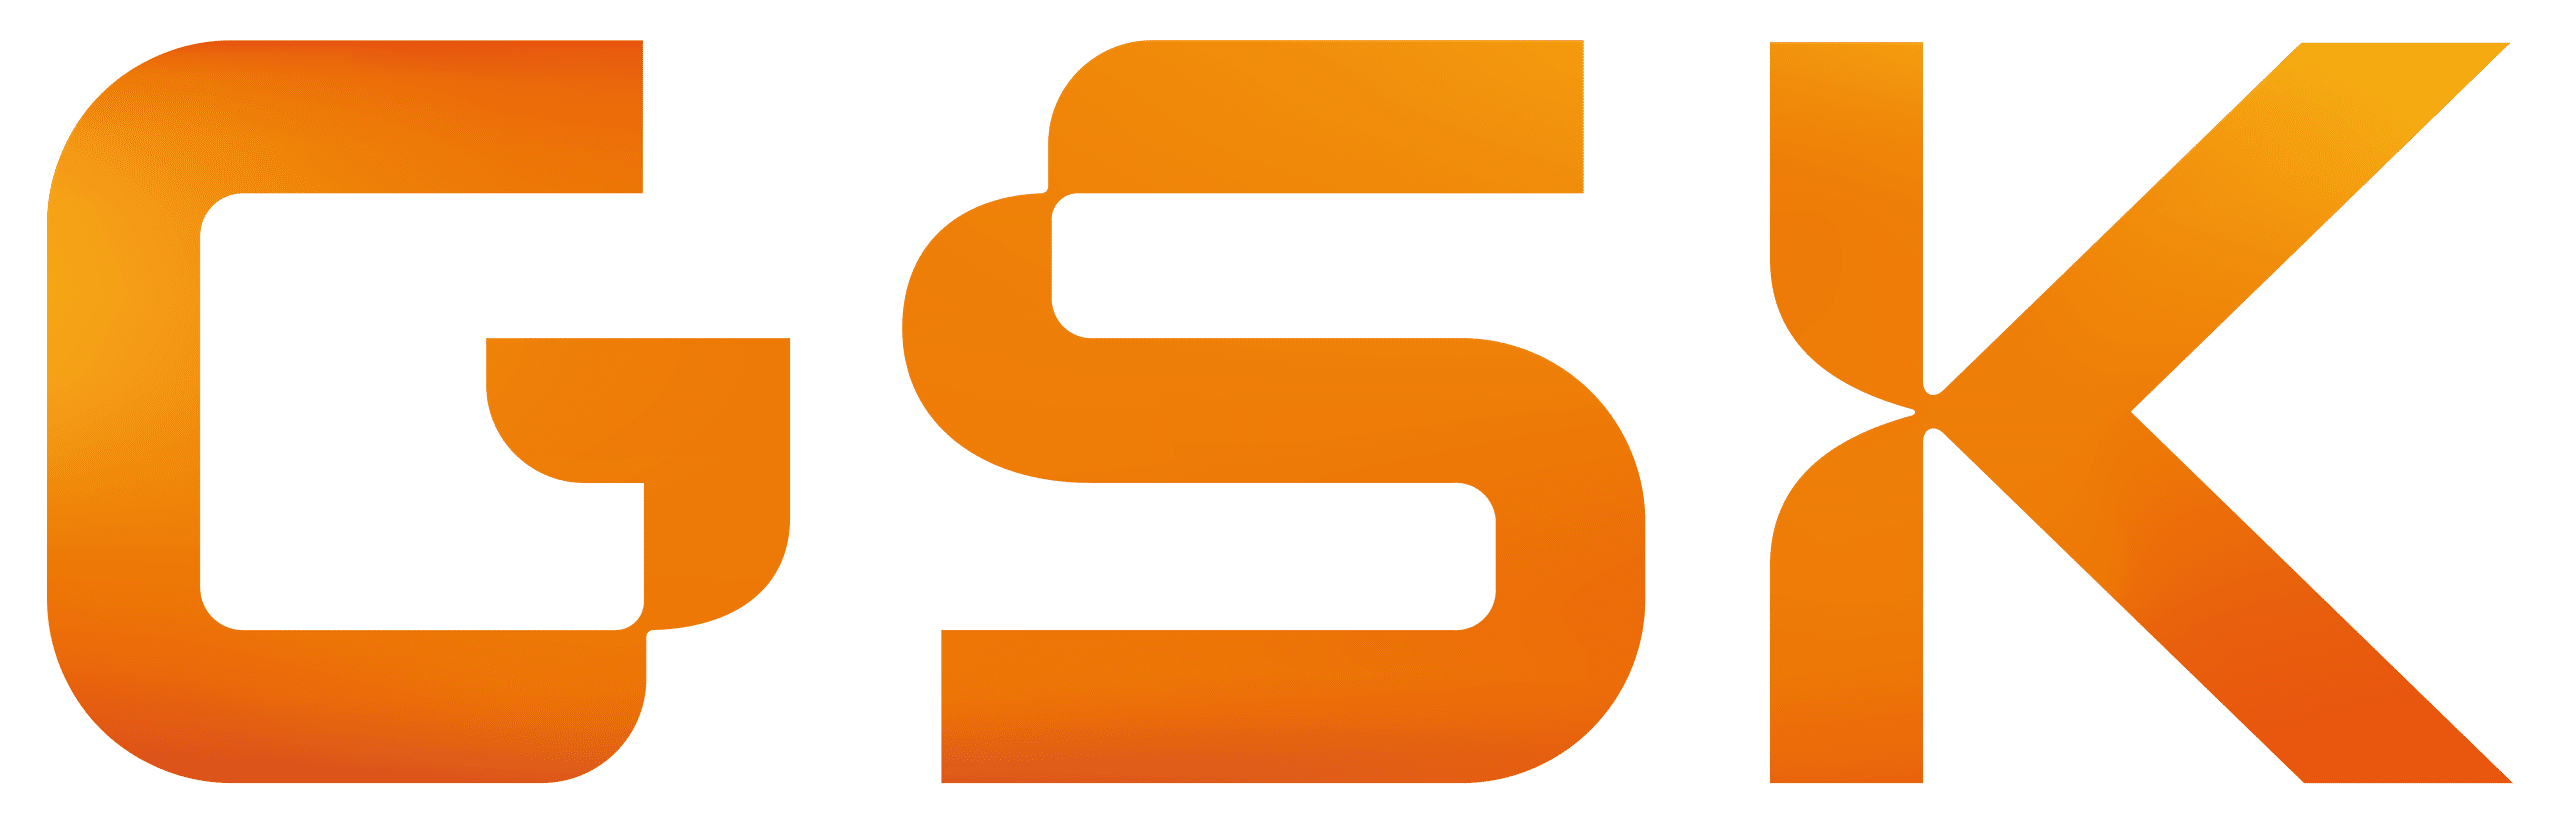 GSK_logo_2022.svg